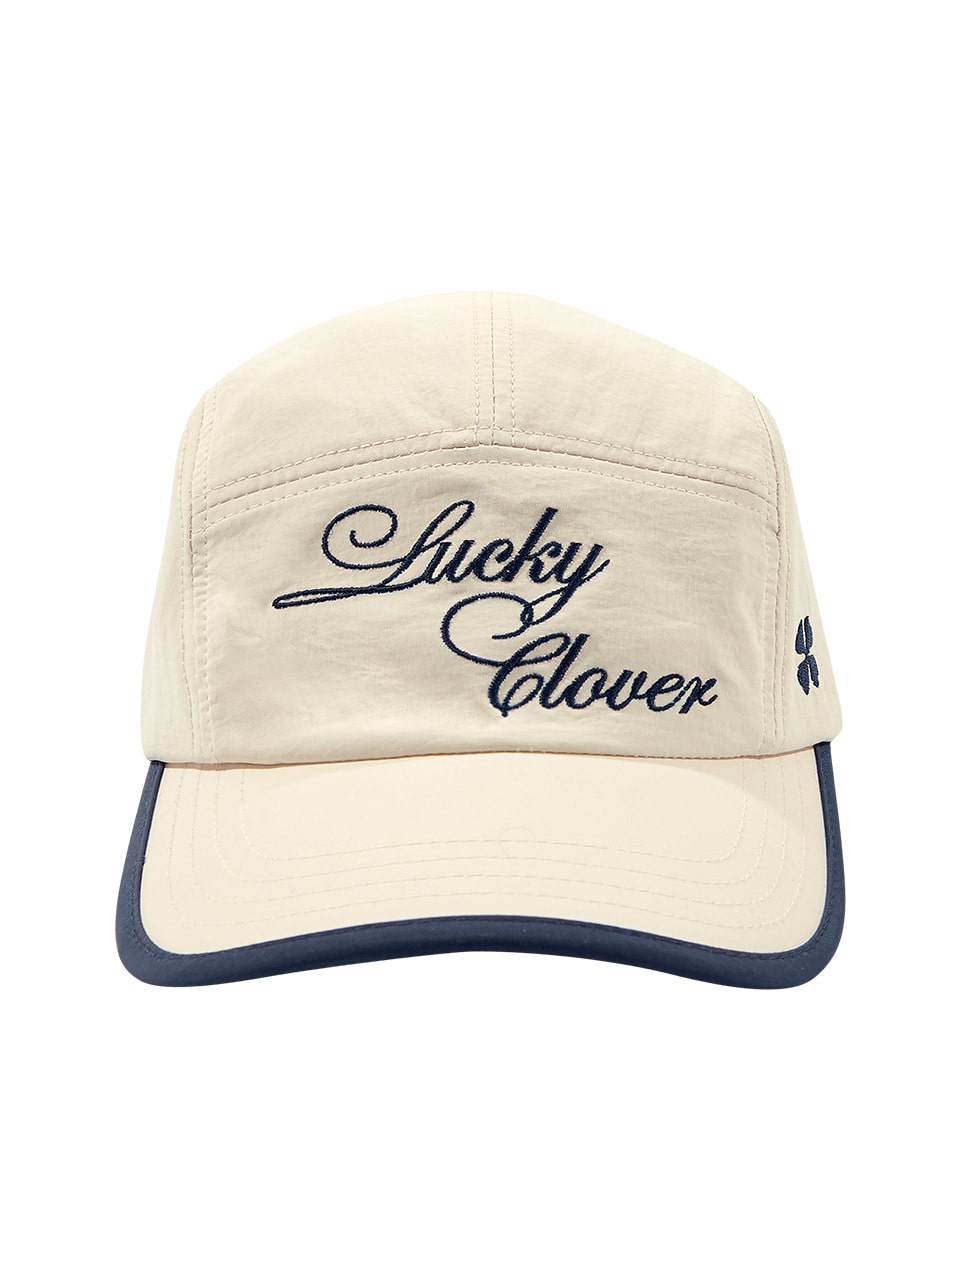 [5/2 예약 발송] LUCKY CLOVER CAMP CAP (CREAM NAVY)